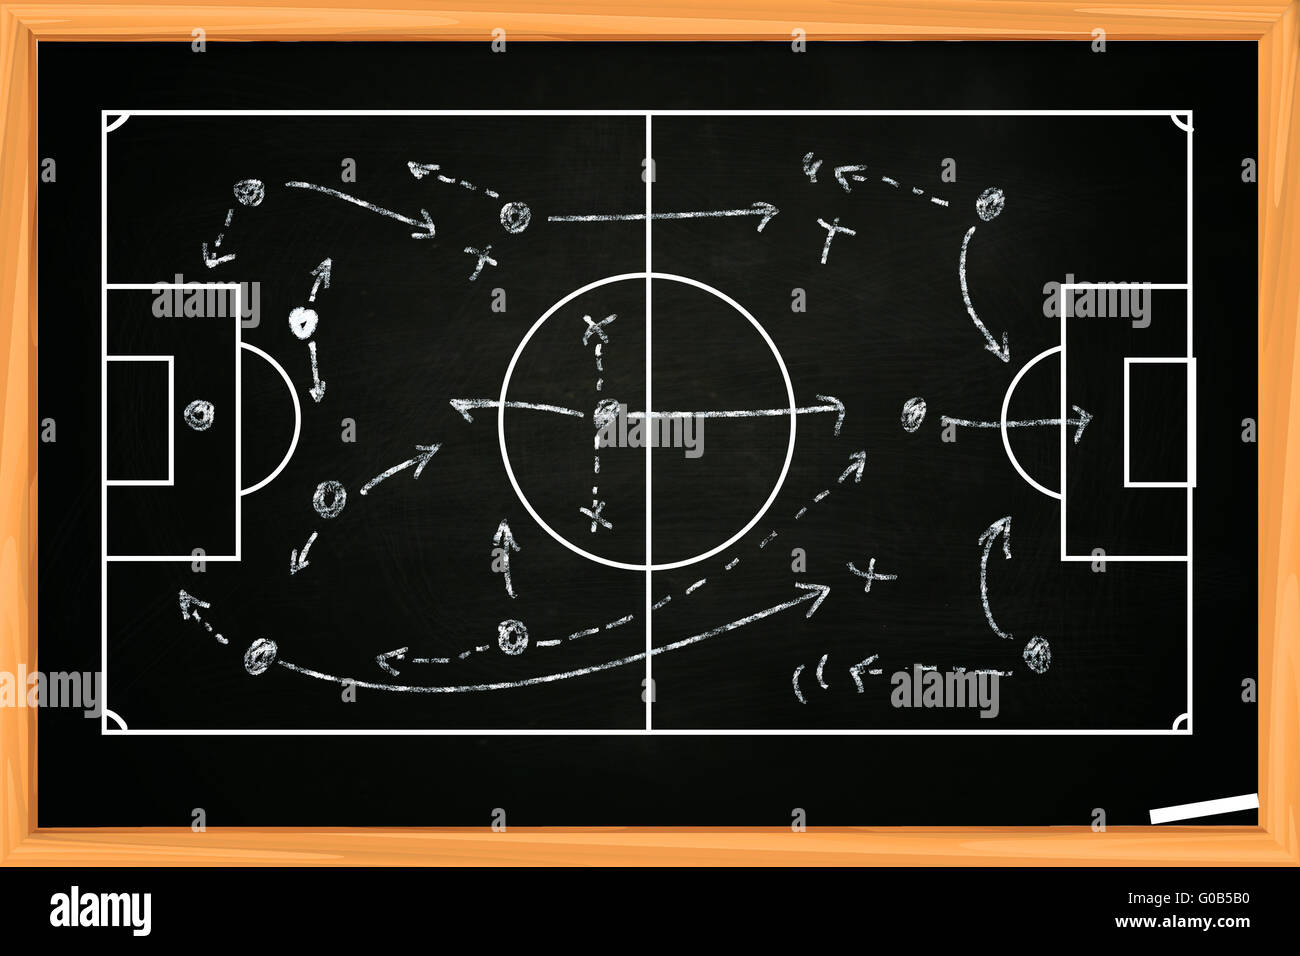 Zeichnung der Fußball oder Fußball-Strategie-Spiel-Vorlage auf Tafel Kreidetafel Stockfoto